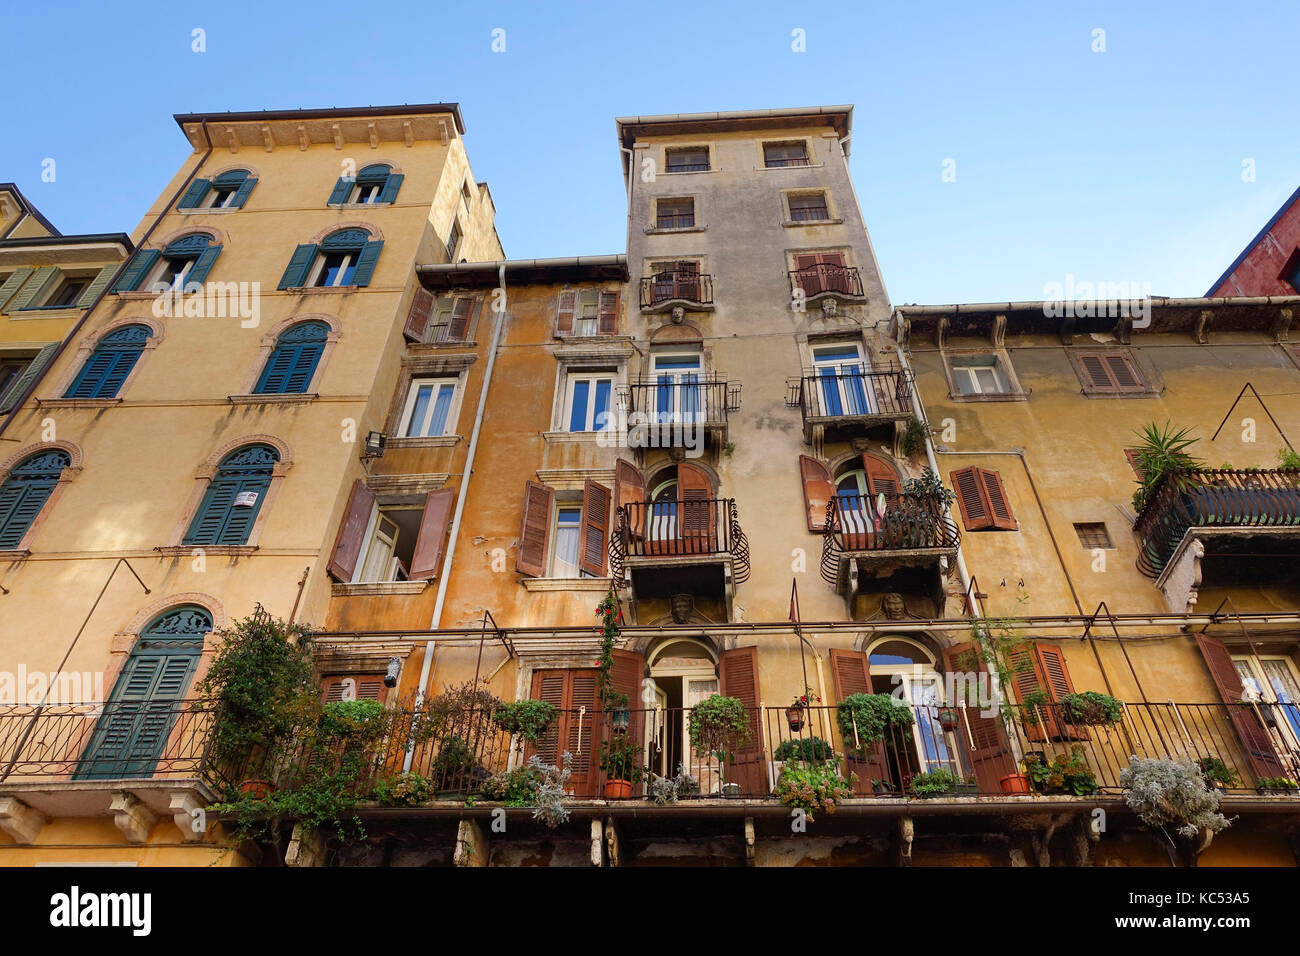 La facciata della casa in piazza delle erbe, Verona, veneto, Italia, Europa Foto Stock